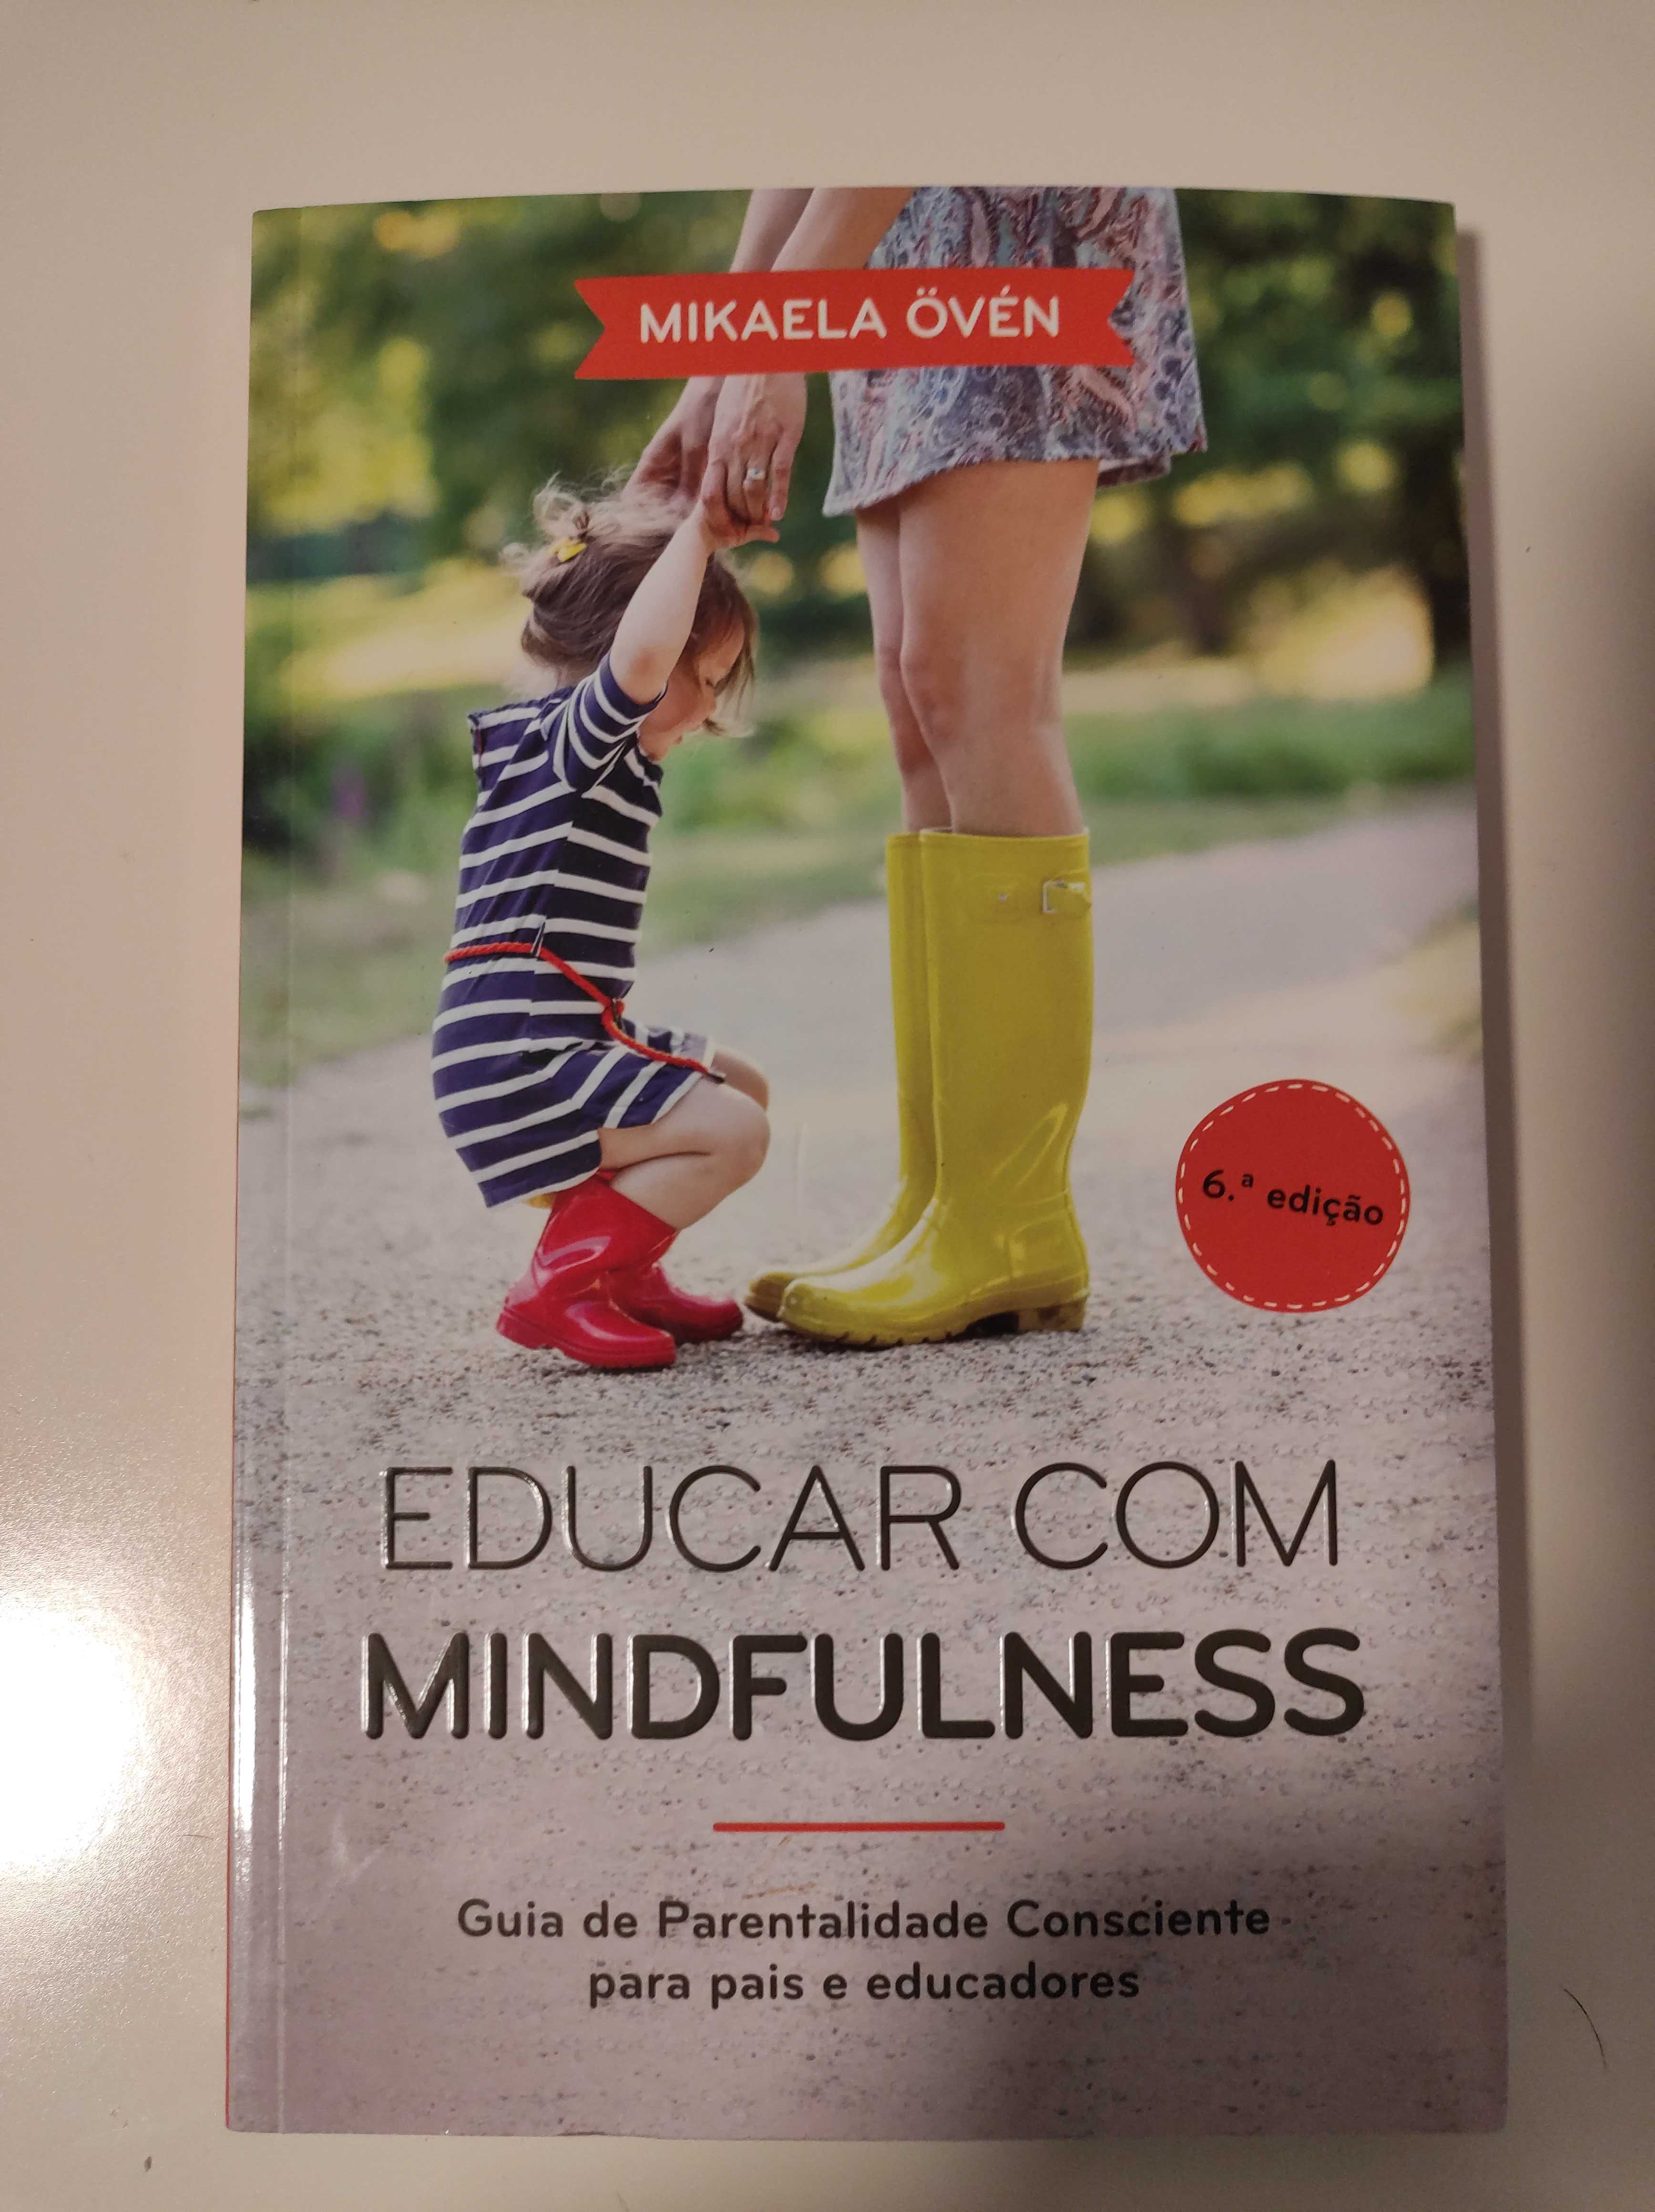 Educação com mindfulness